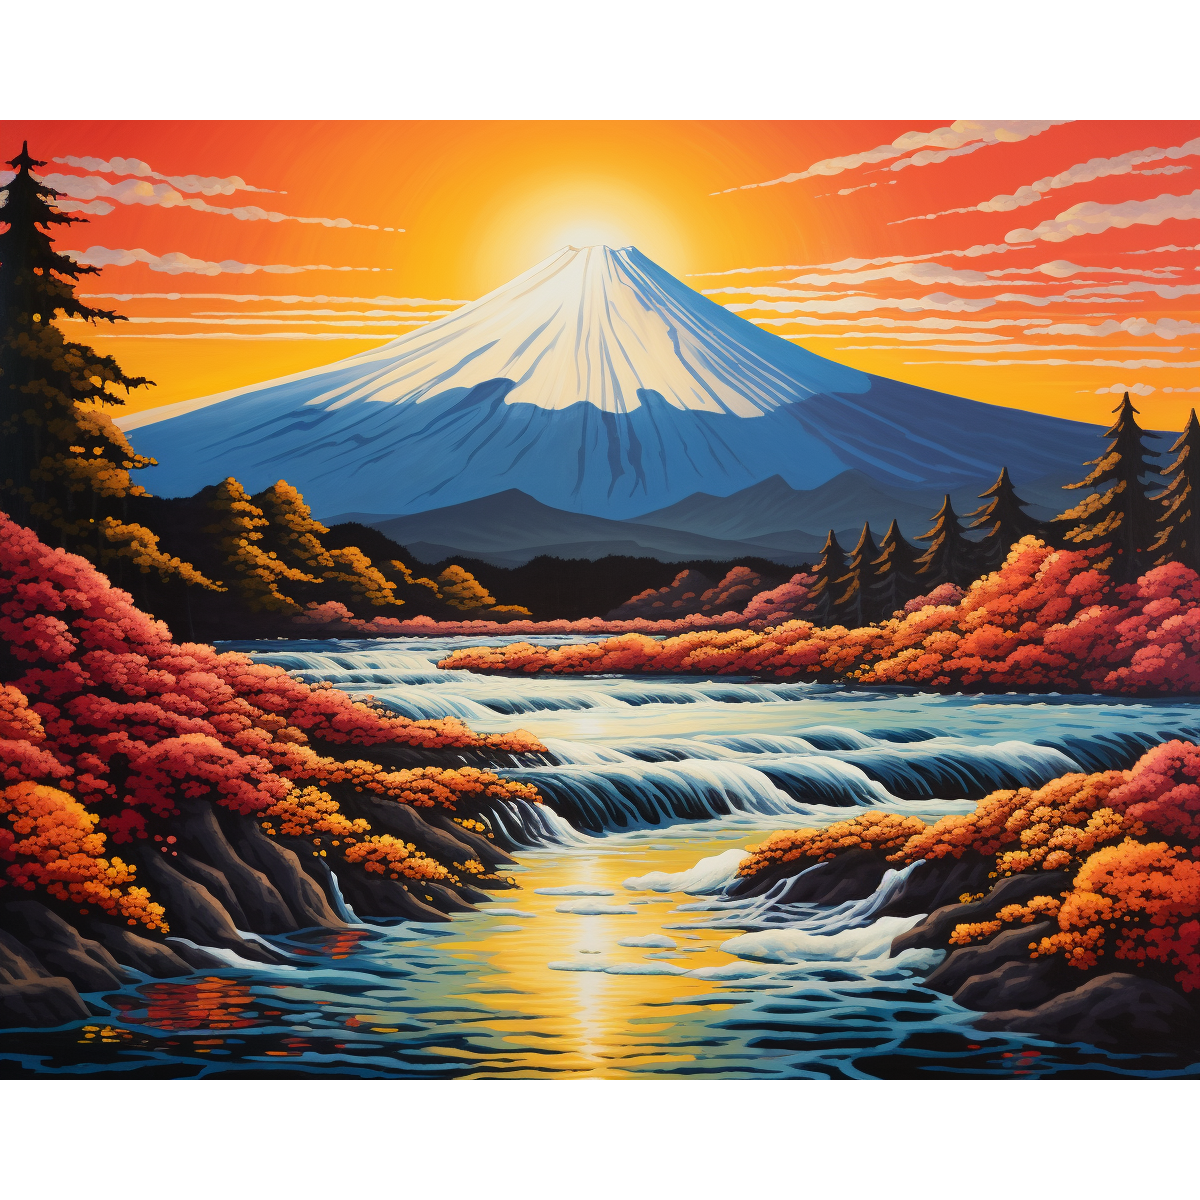 Mount Fuji Sunset